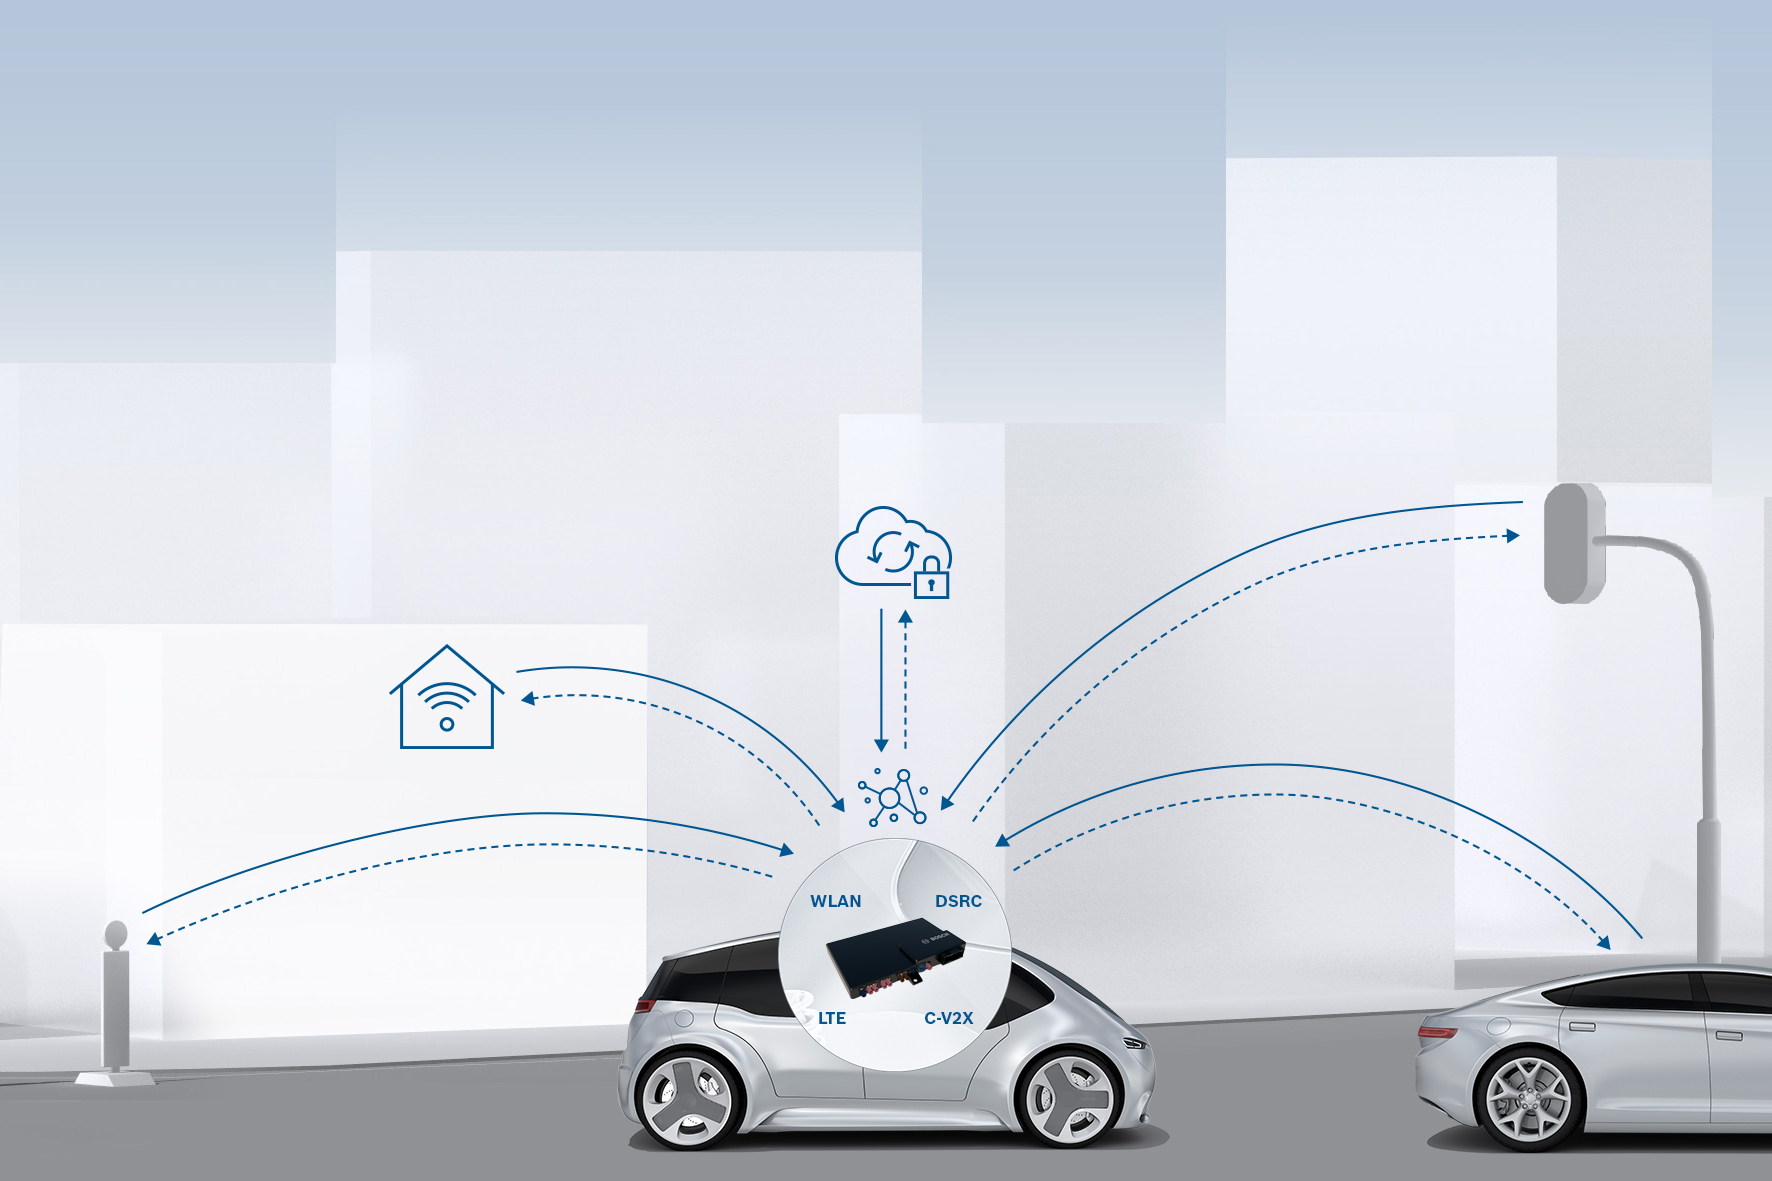 Upozornění v kritických situacích skrze komunikaci "vehicle-to-x" od společnosti Bosch